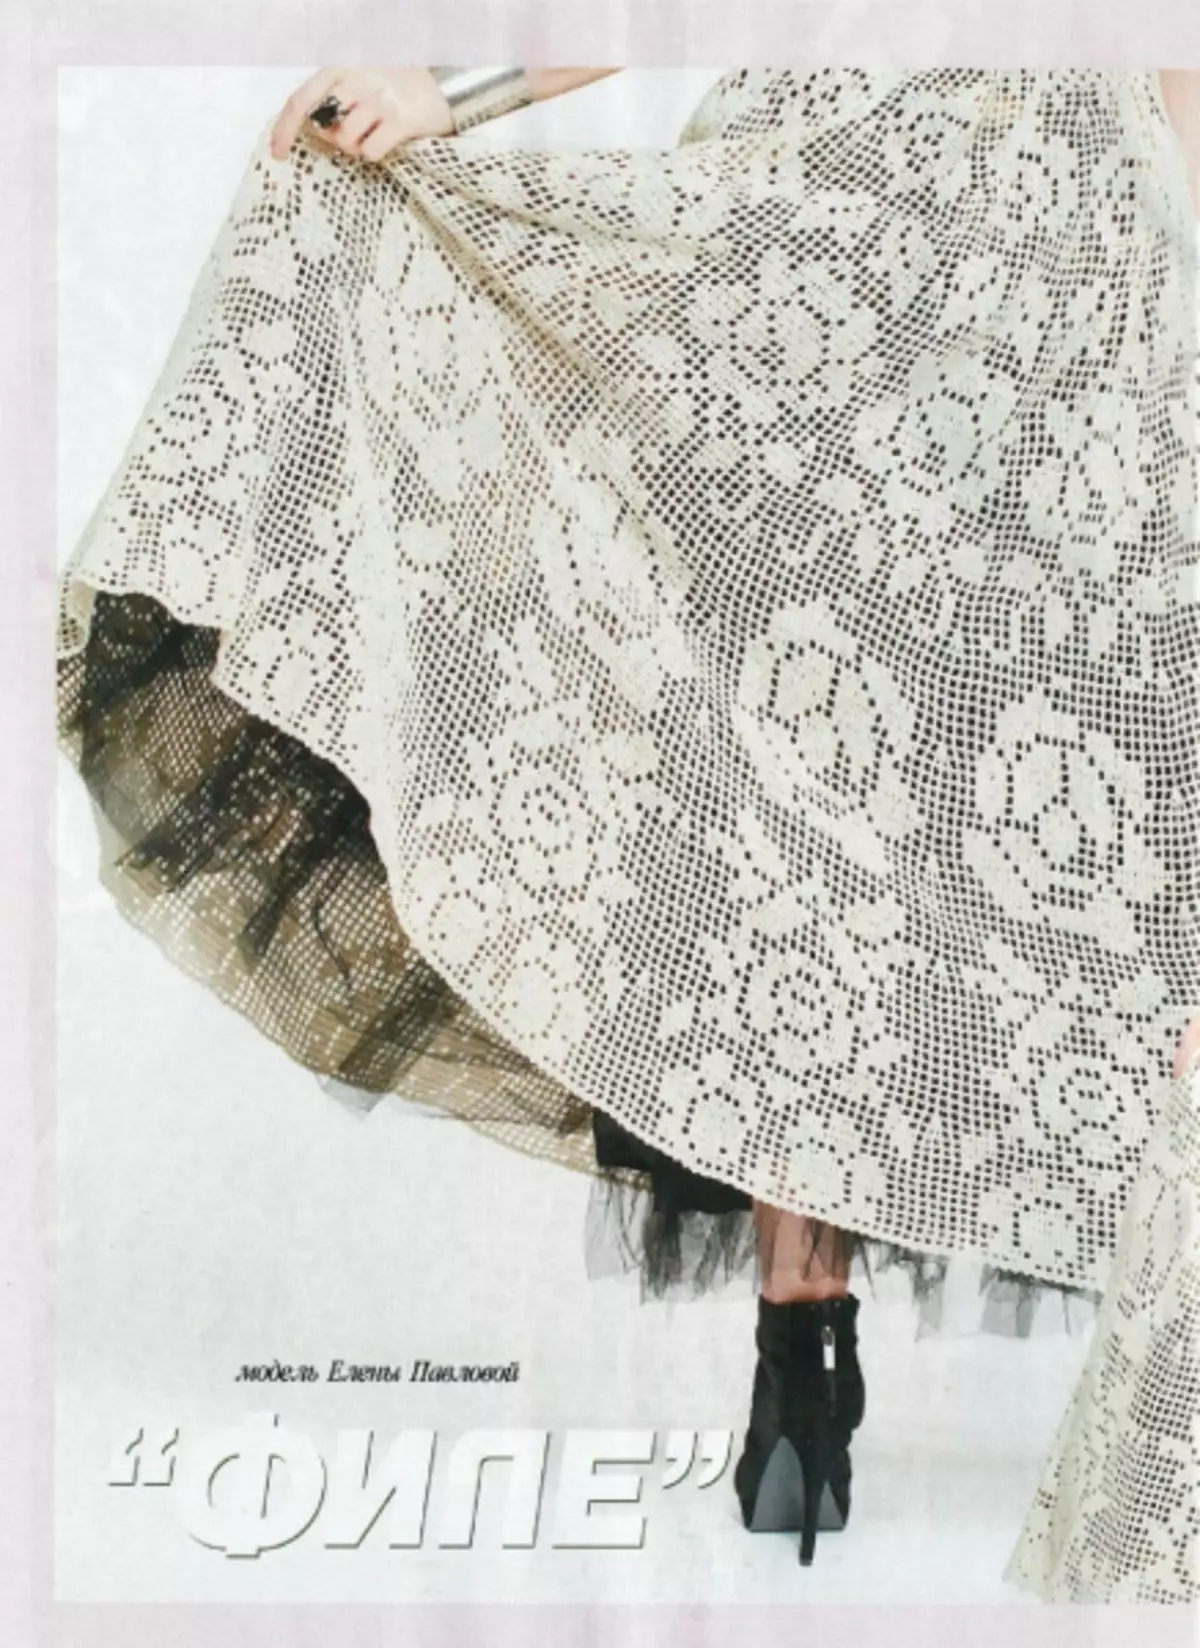 Magazeti Fashion No. 609 - 2019. Suala jipya.